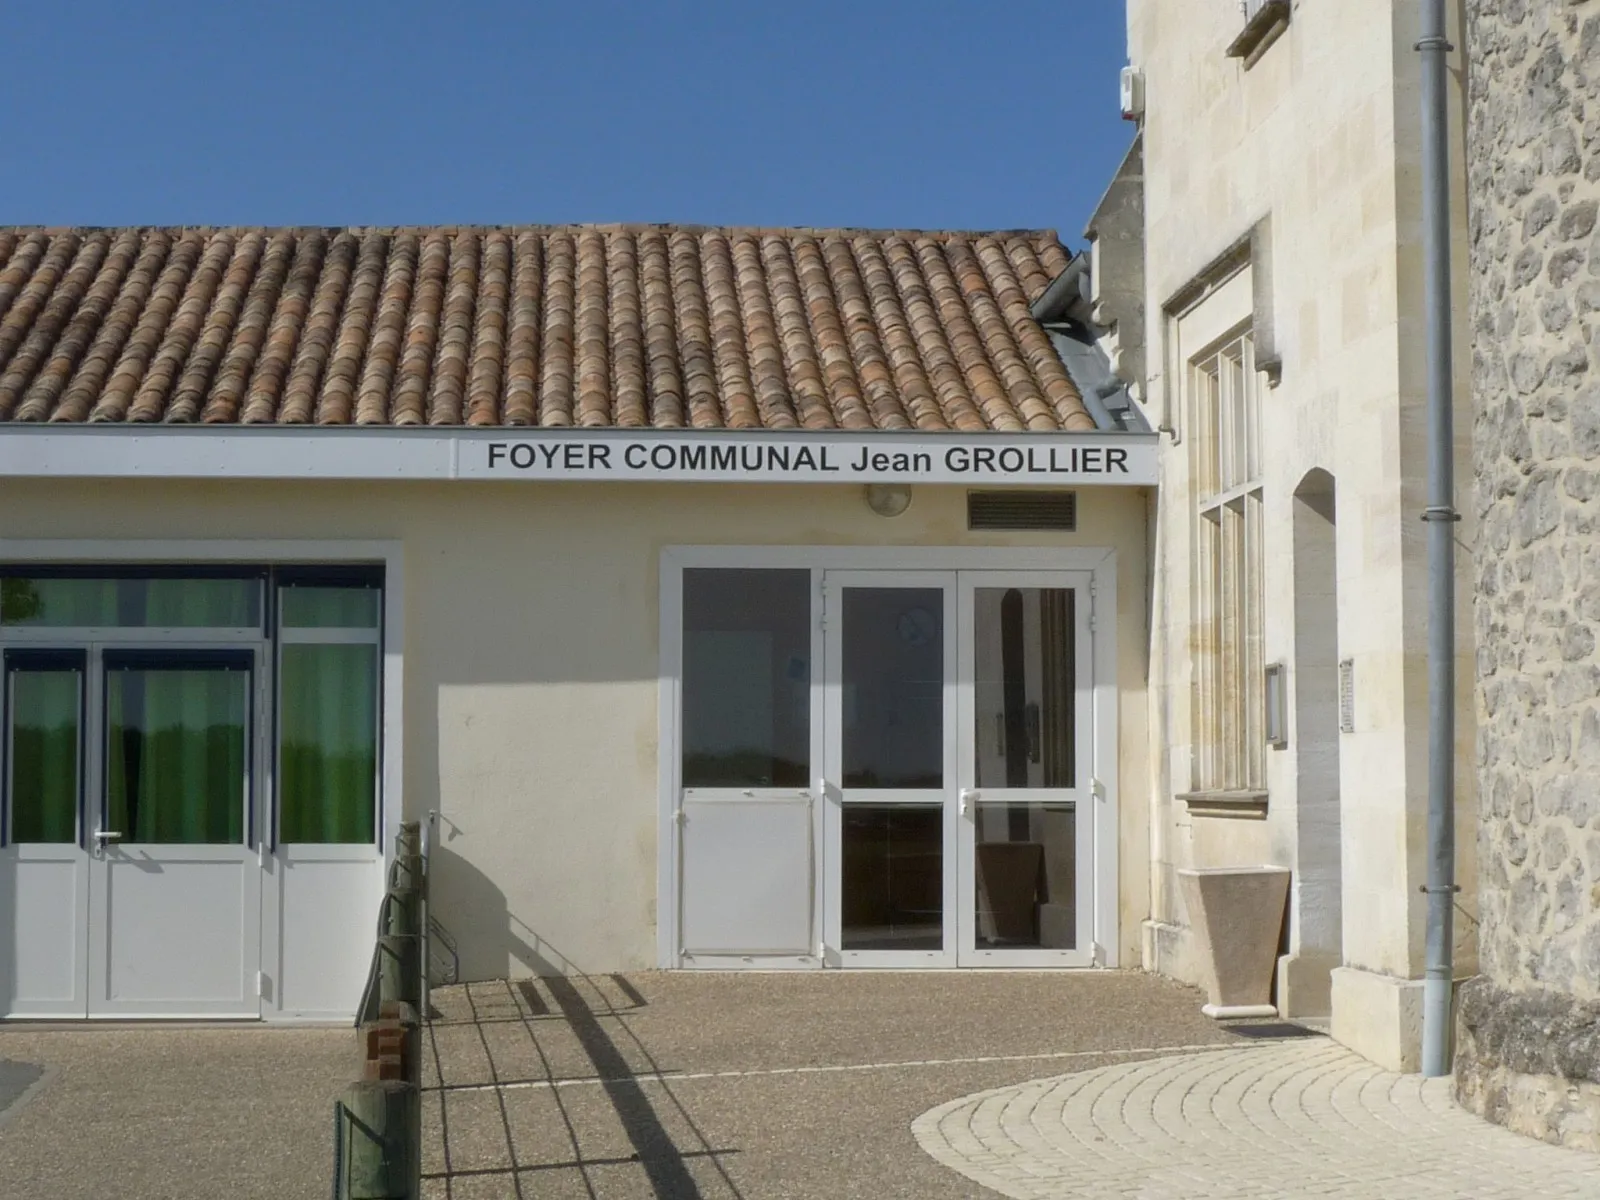 Photo showing: Foyer communal Jean-Grollier, Bonzac, Gironde, France